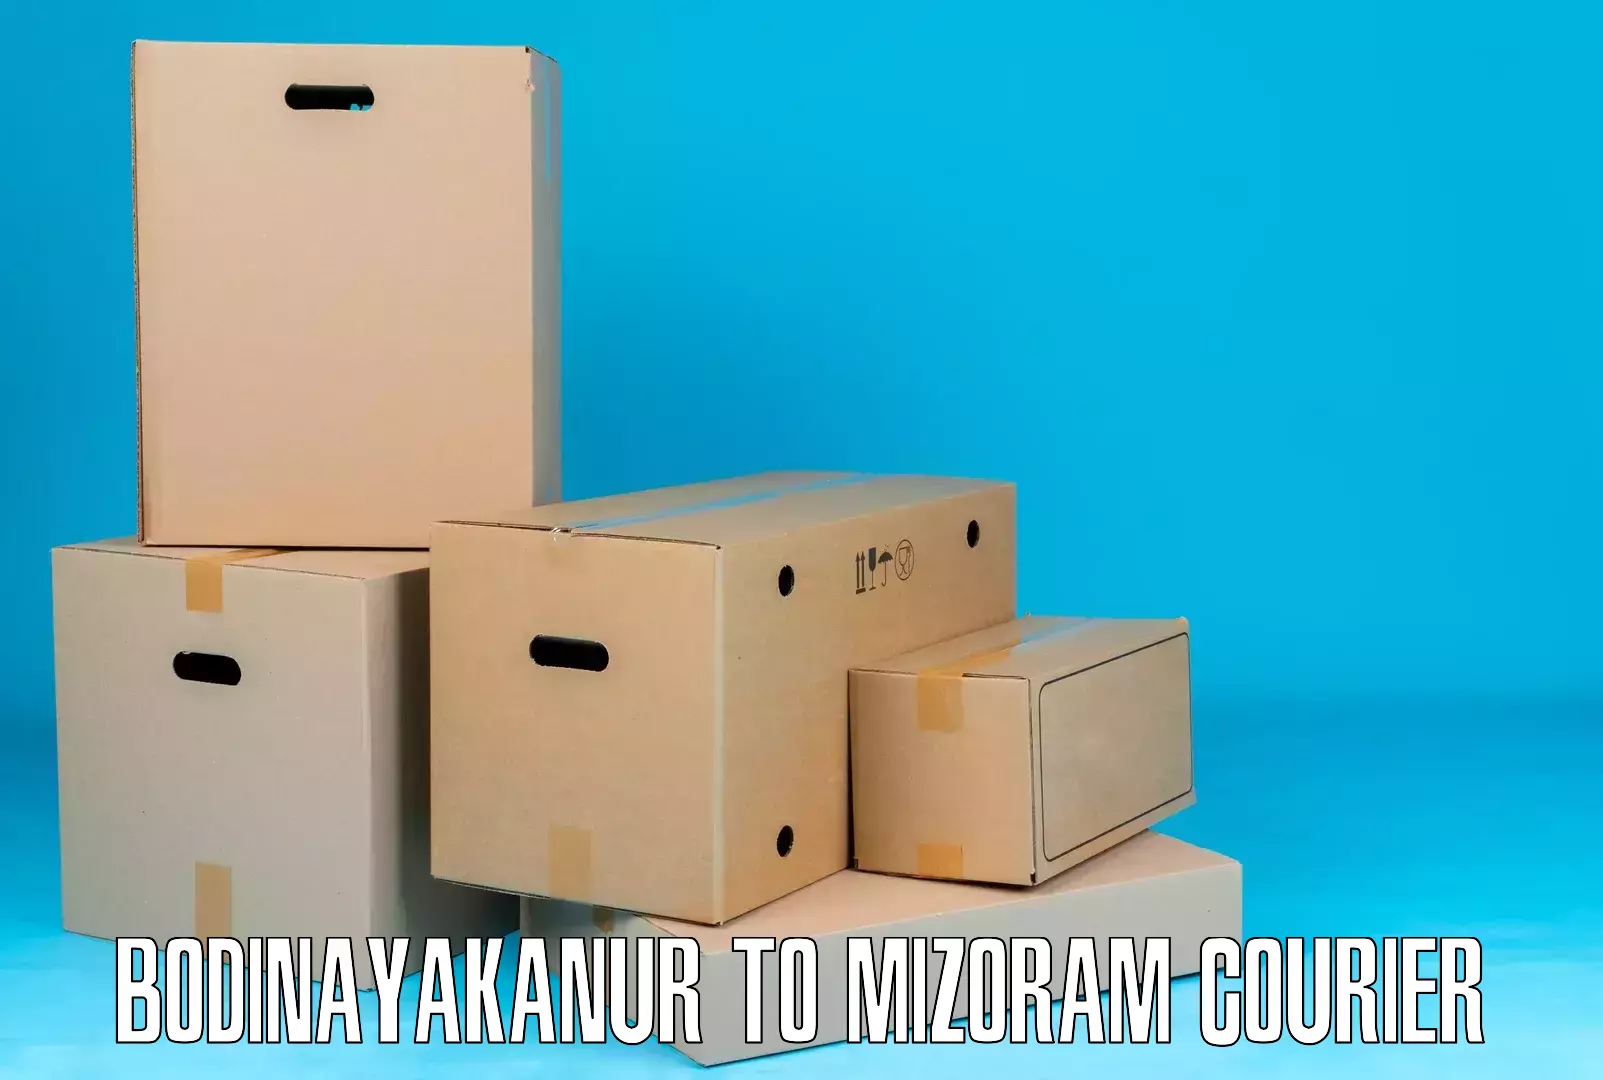 Online shipping calculator Bodinayakanur to Mamit